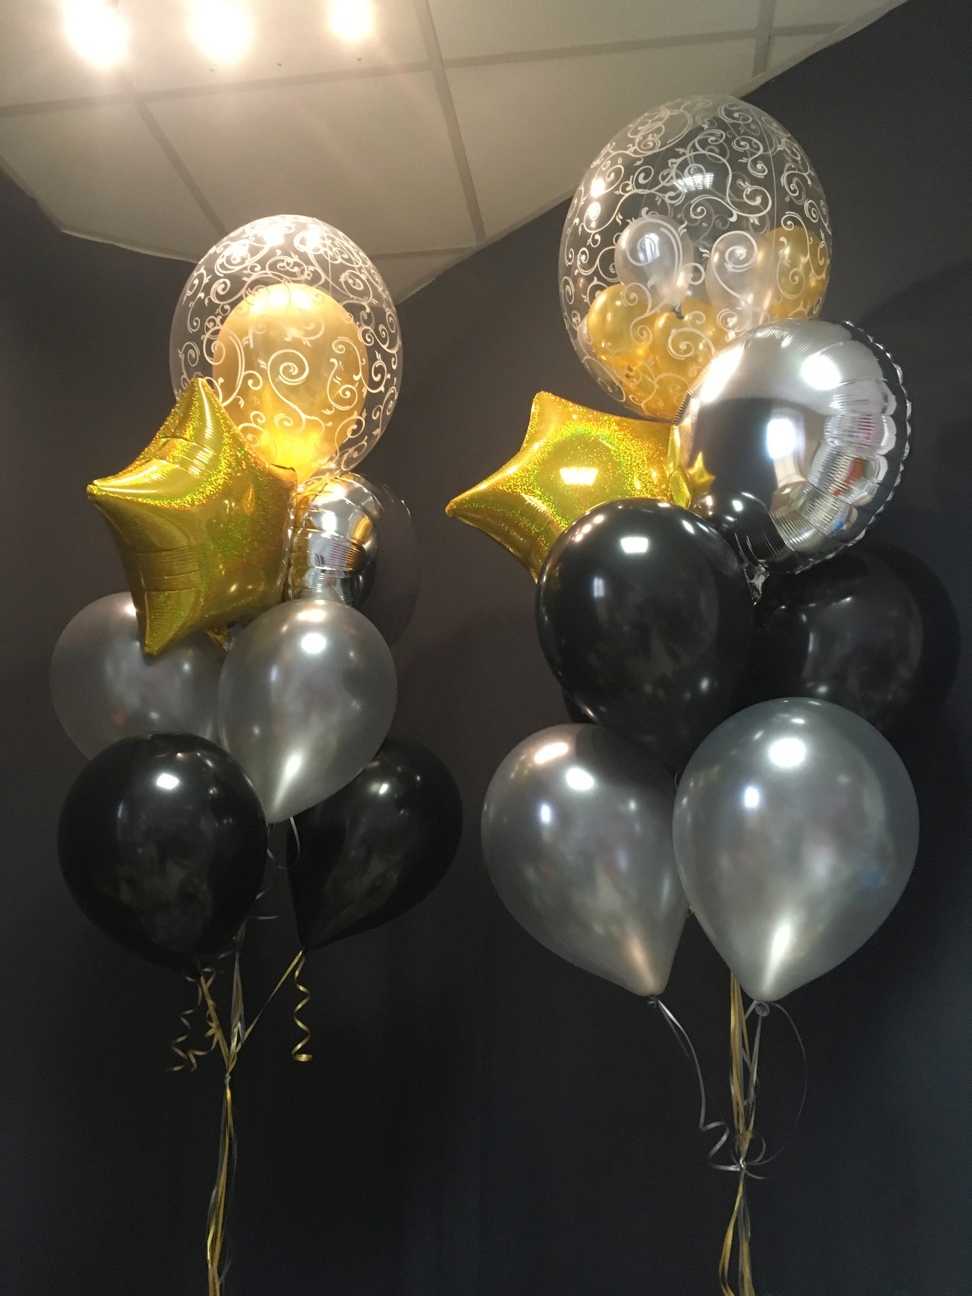 Zwei Ballons auf einem Tisch in Wien mit schwarzen, silbernen und goldenen Ballons